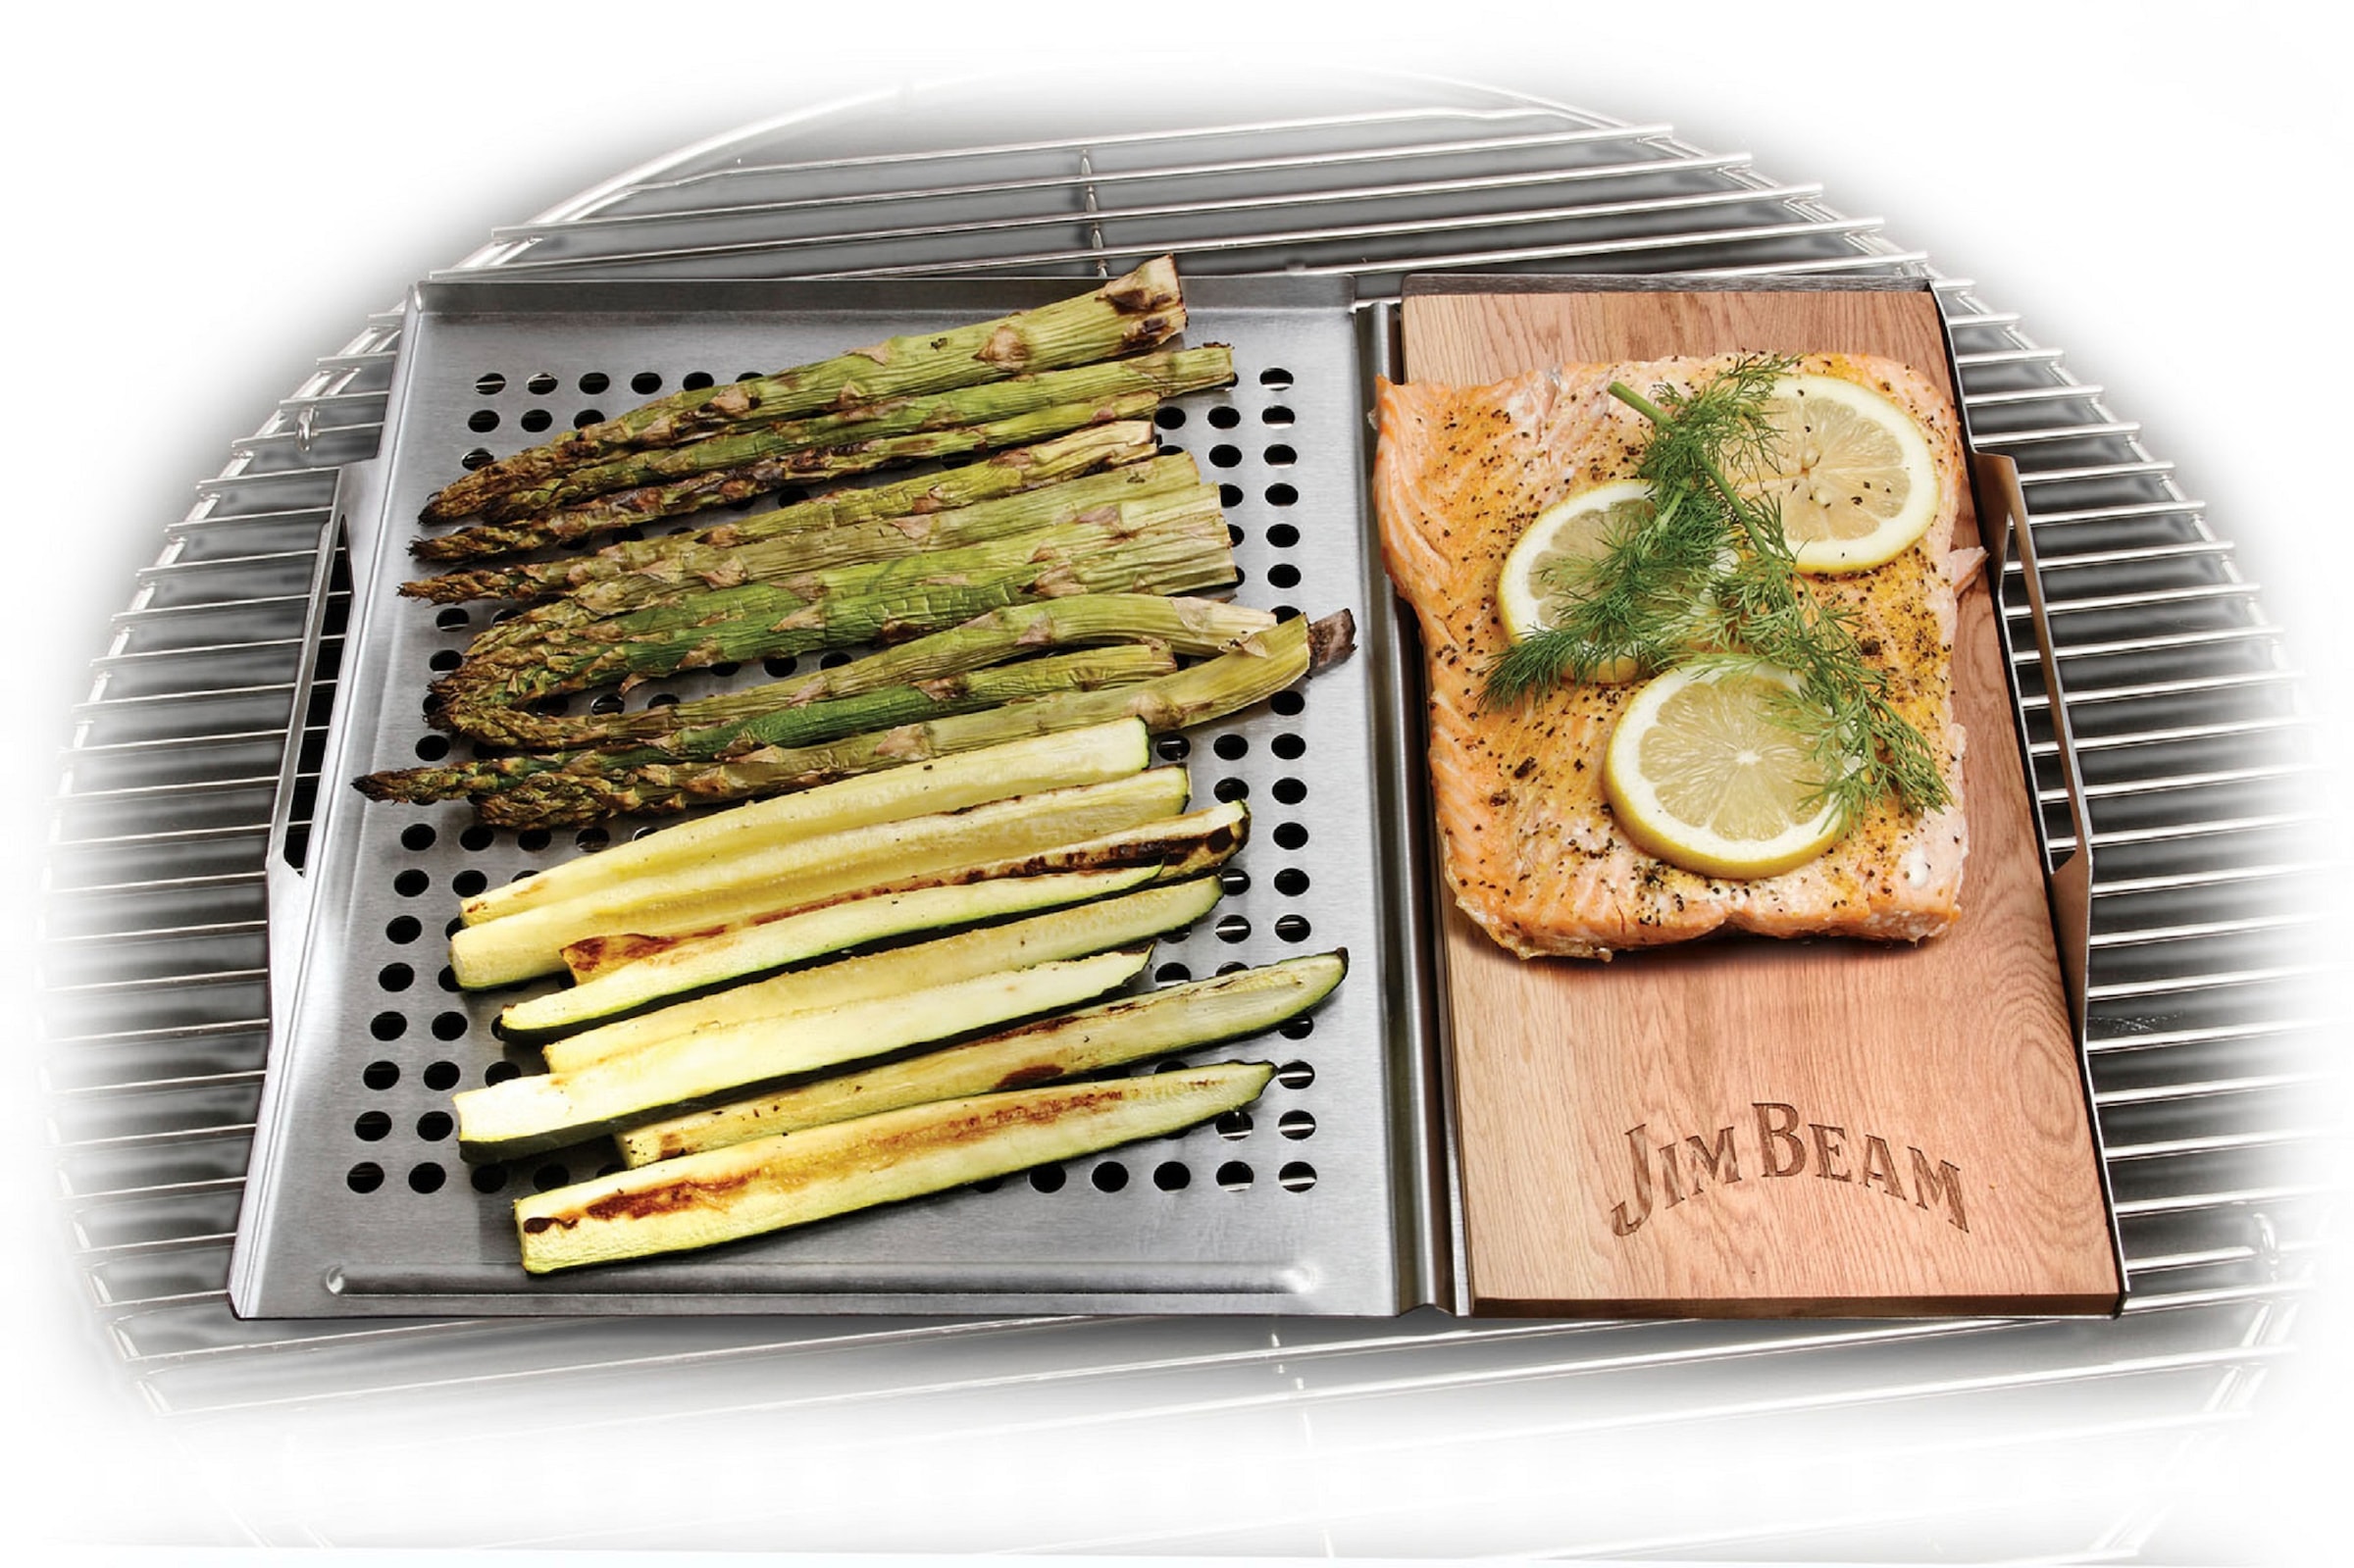 Jim Beam BBQ Grillplatte, Grillauflage mit Zedernholz-Platte, ø 29 cm  kaufen | BAUR